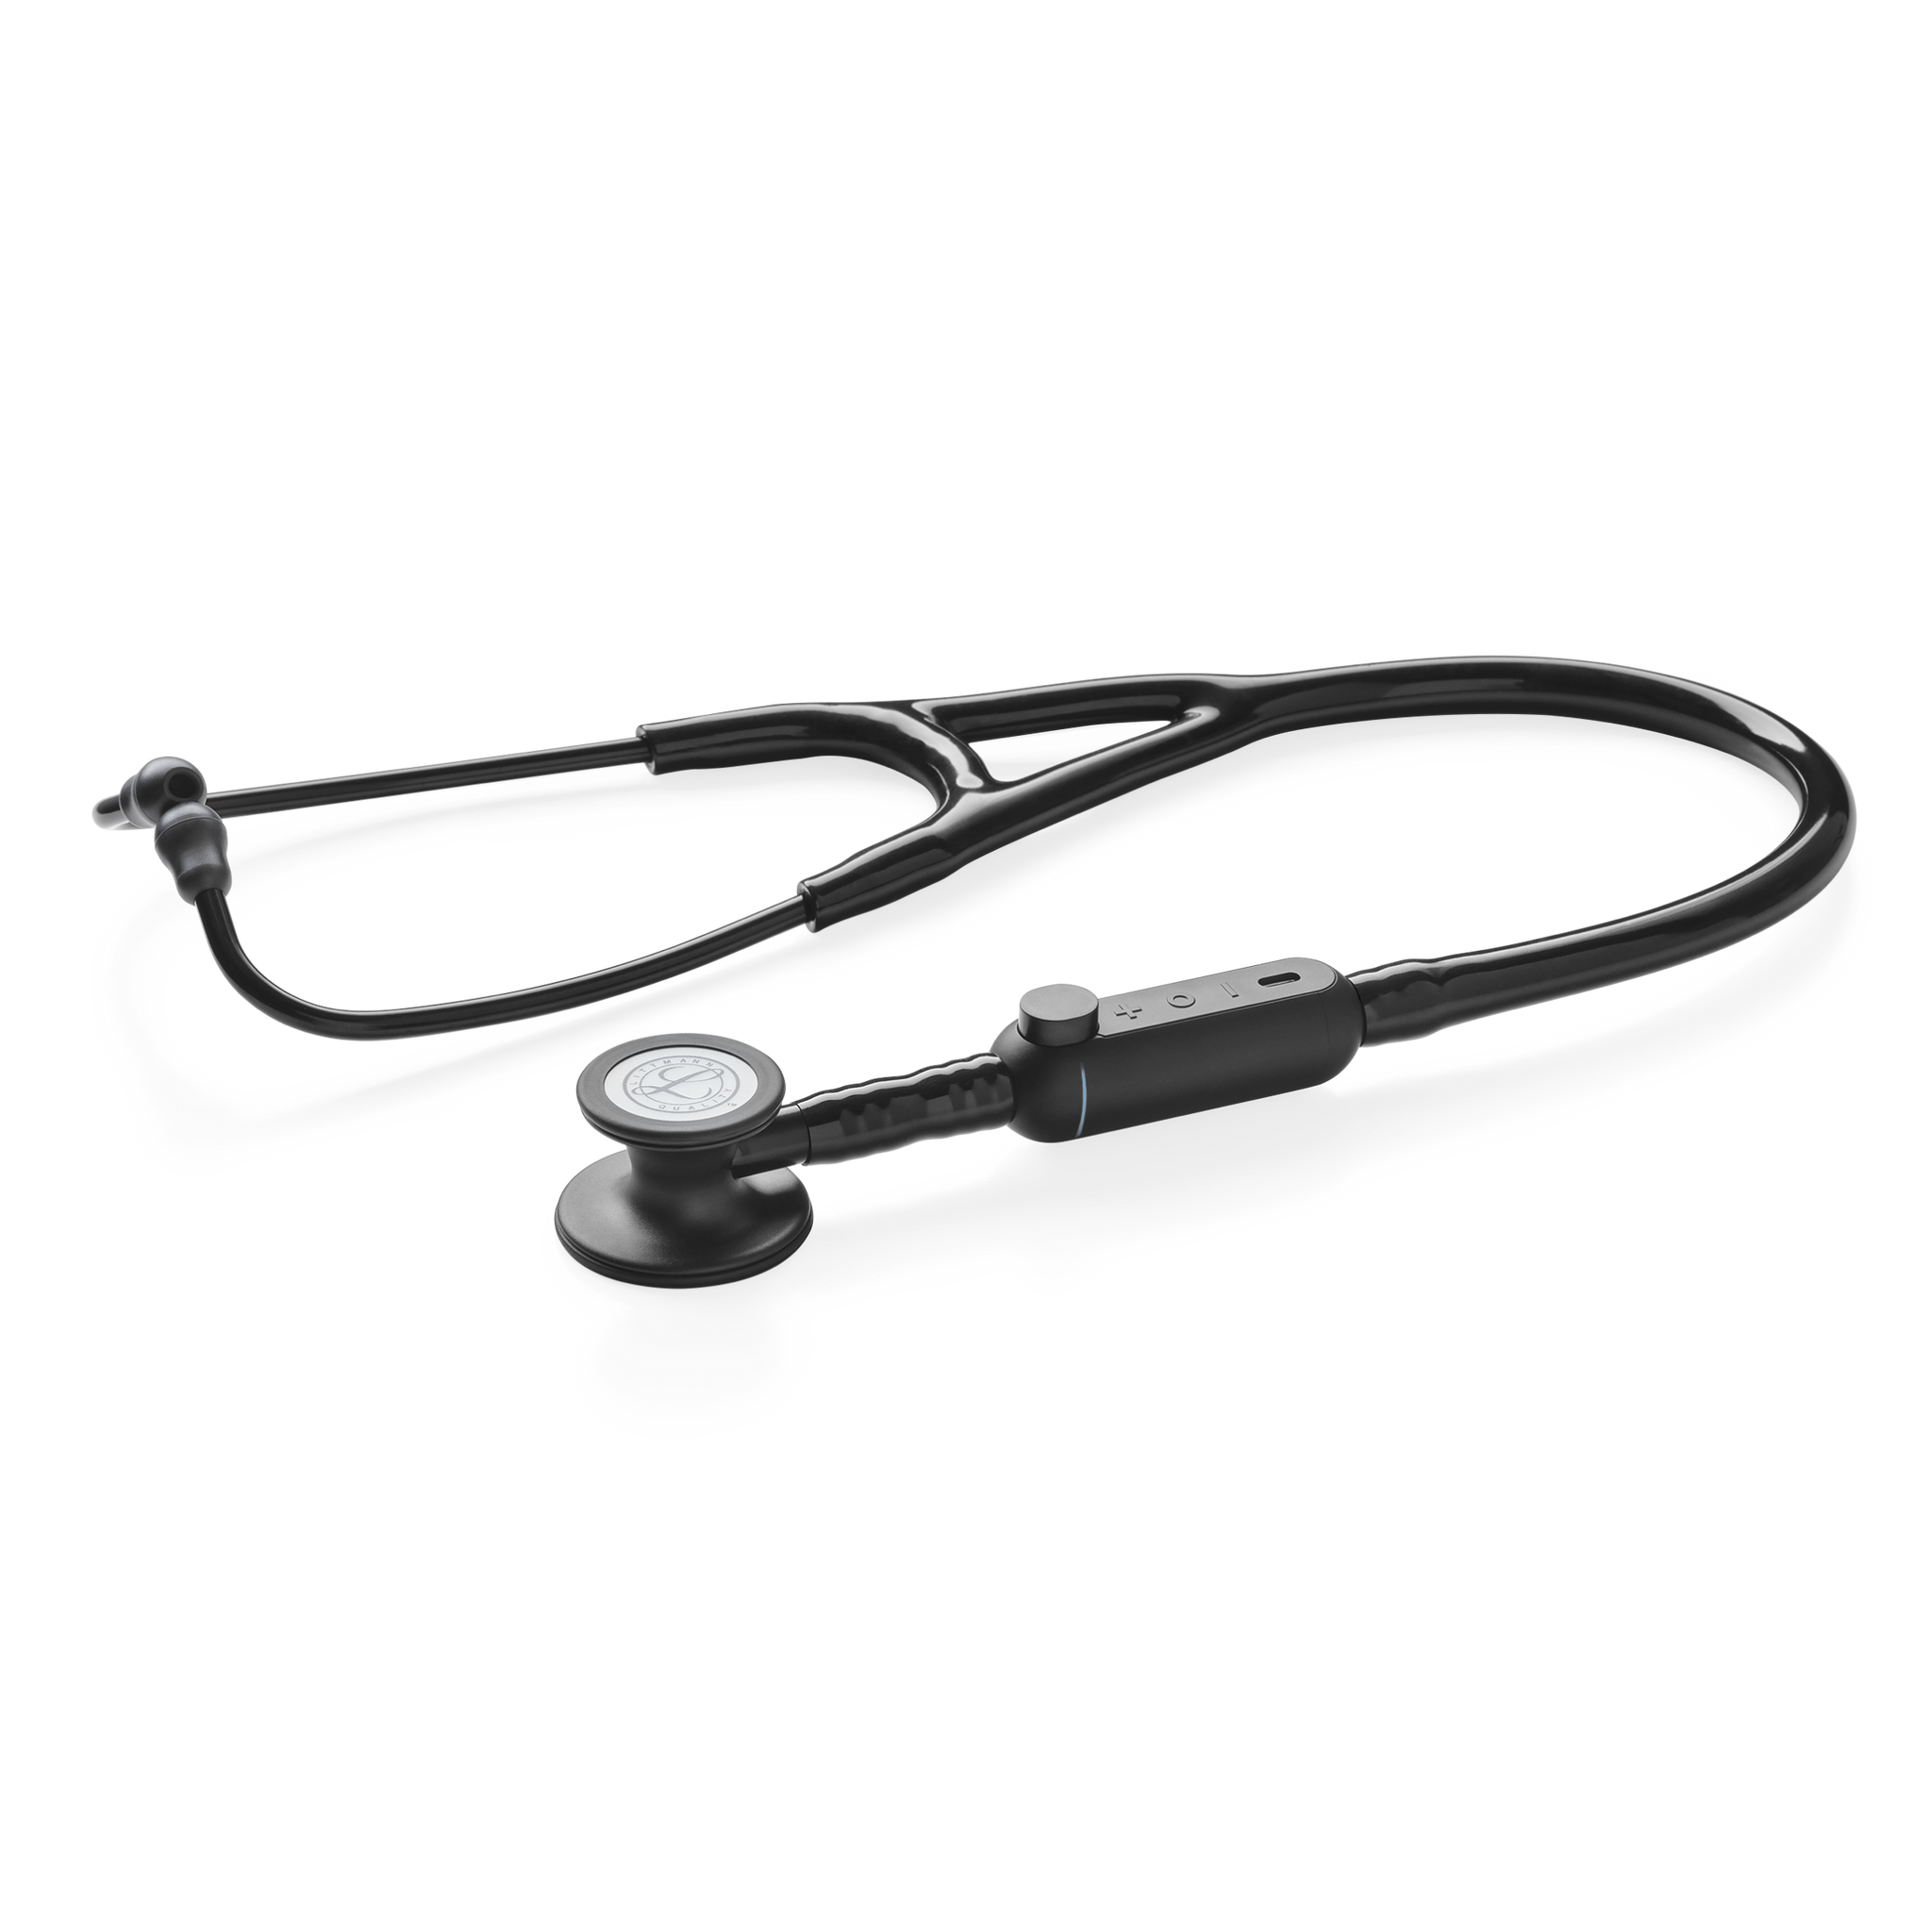 Digital Stethoscope, Color: Black